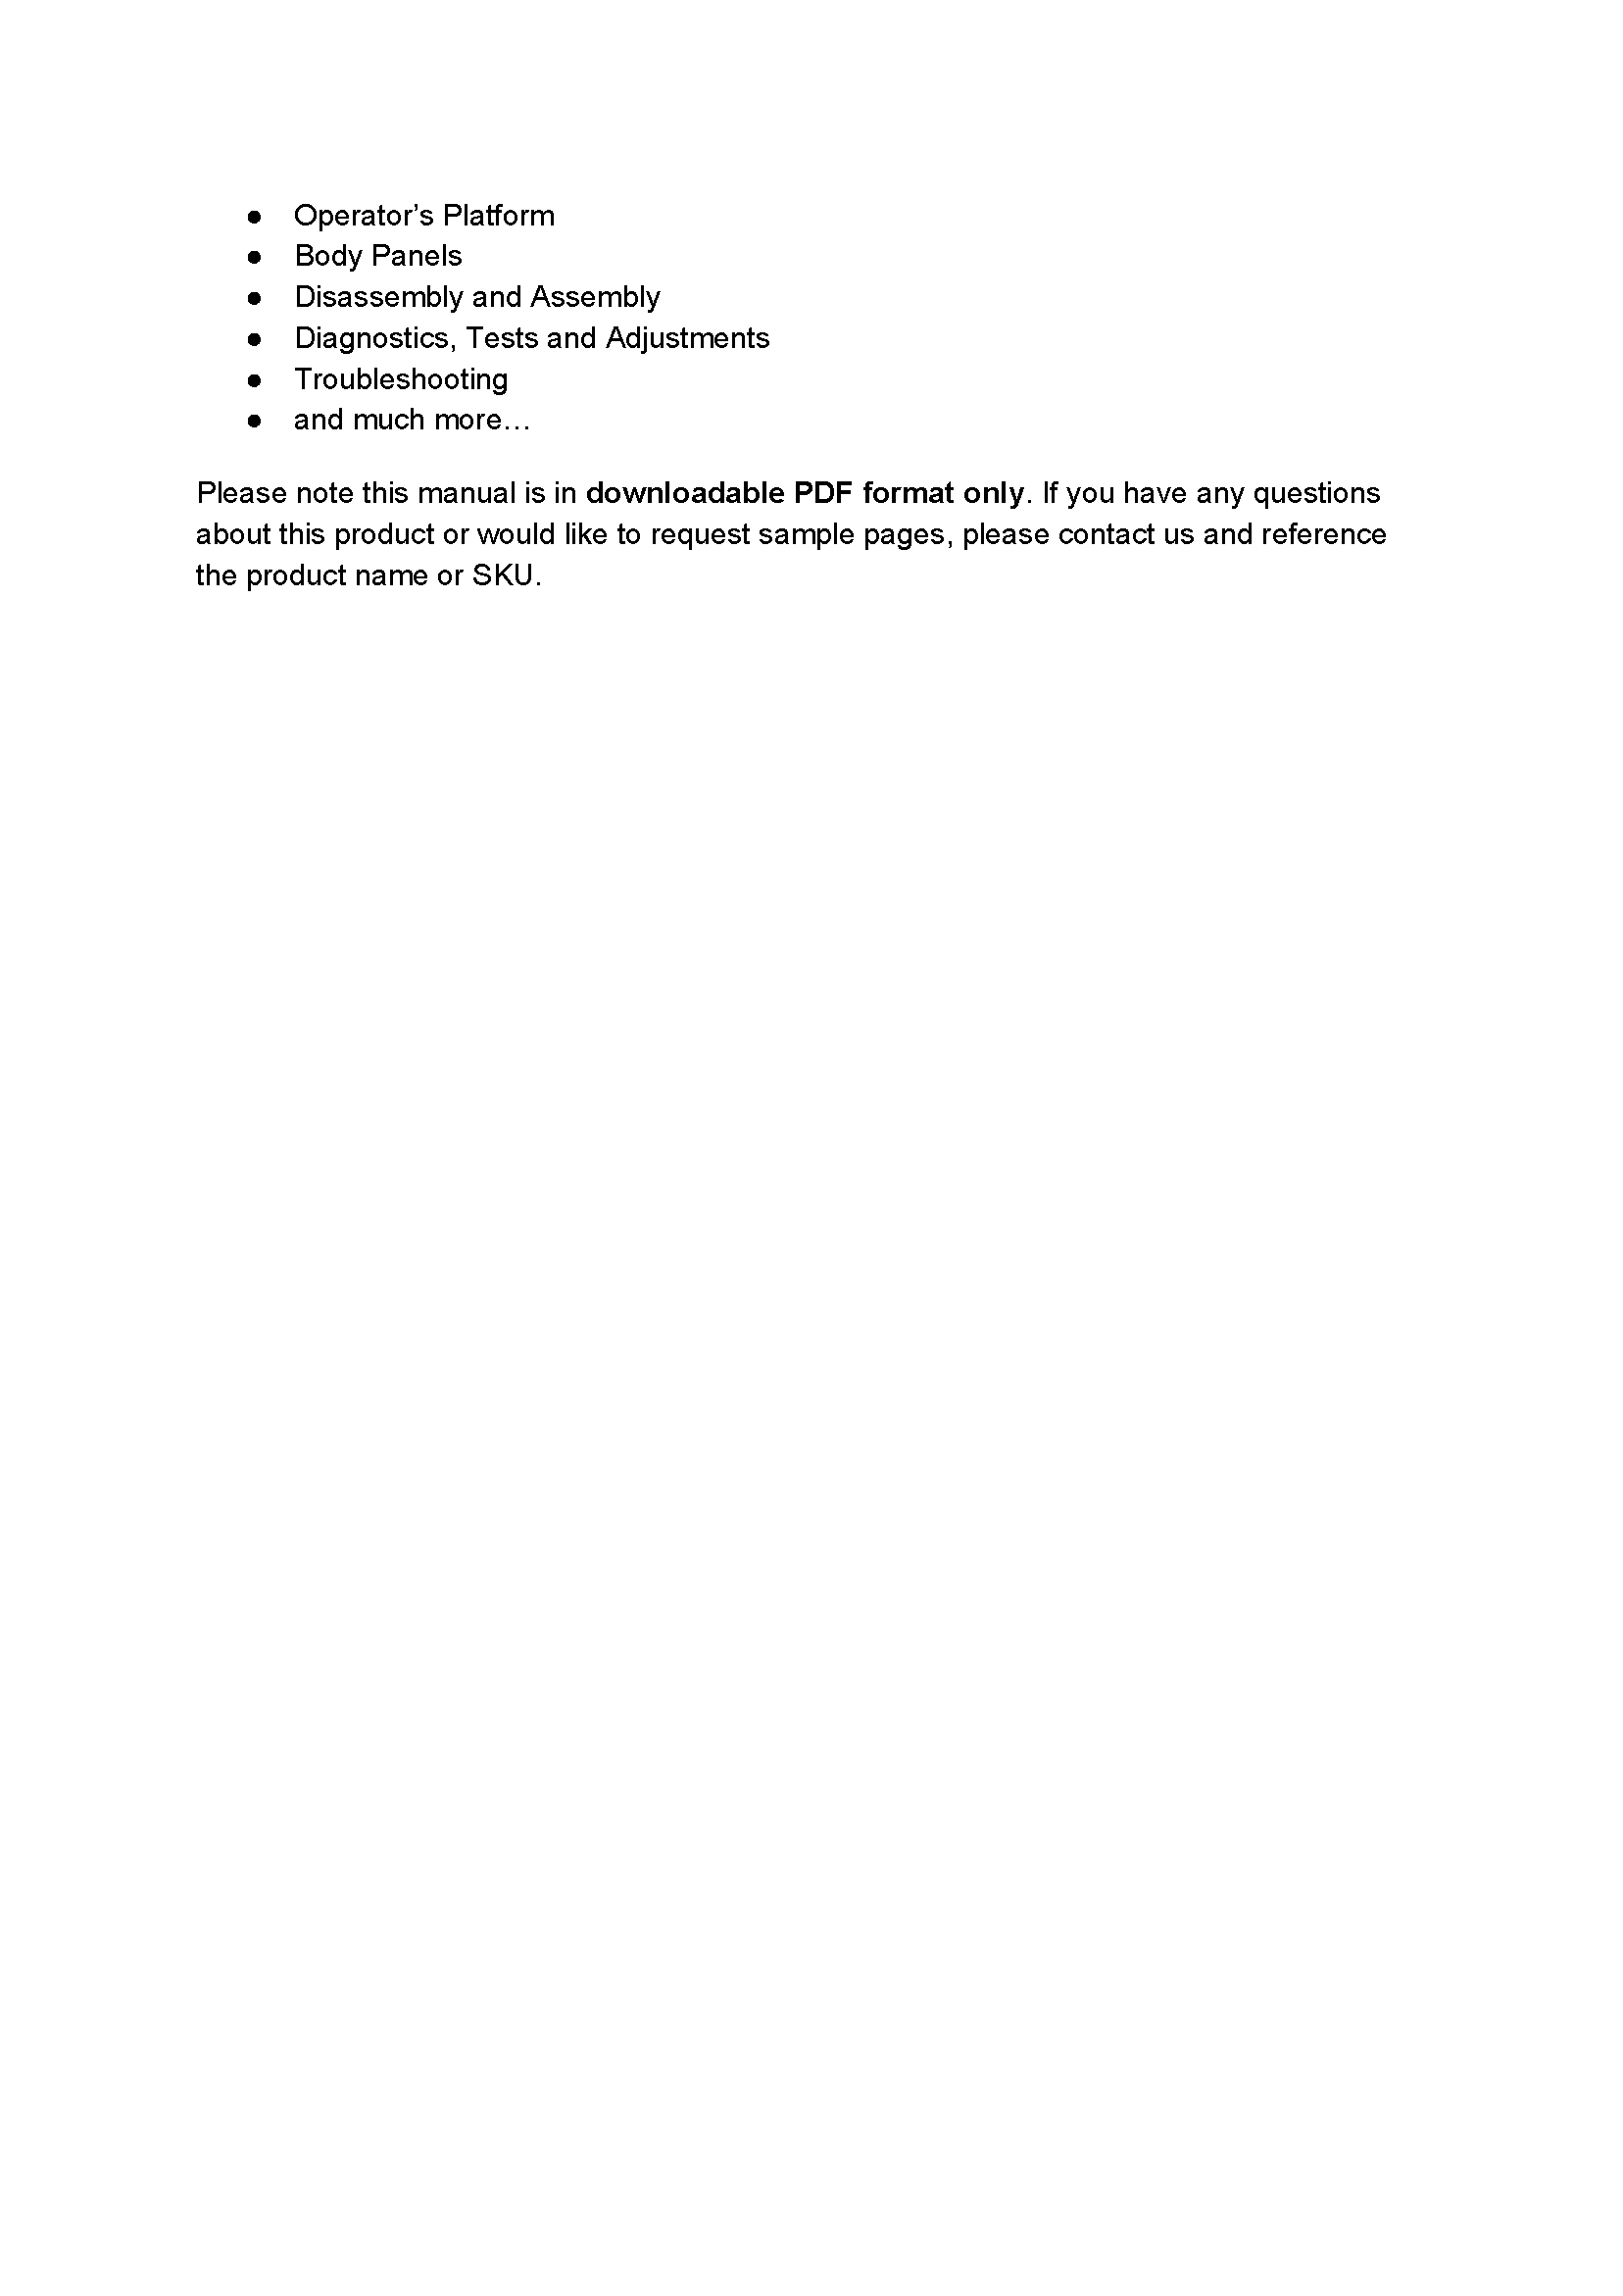 John Deere 4940 manual pdf